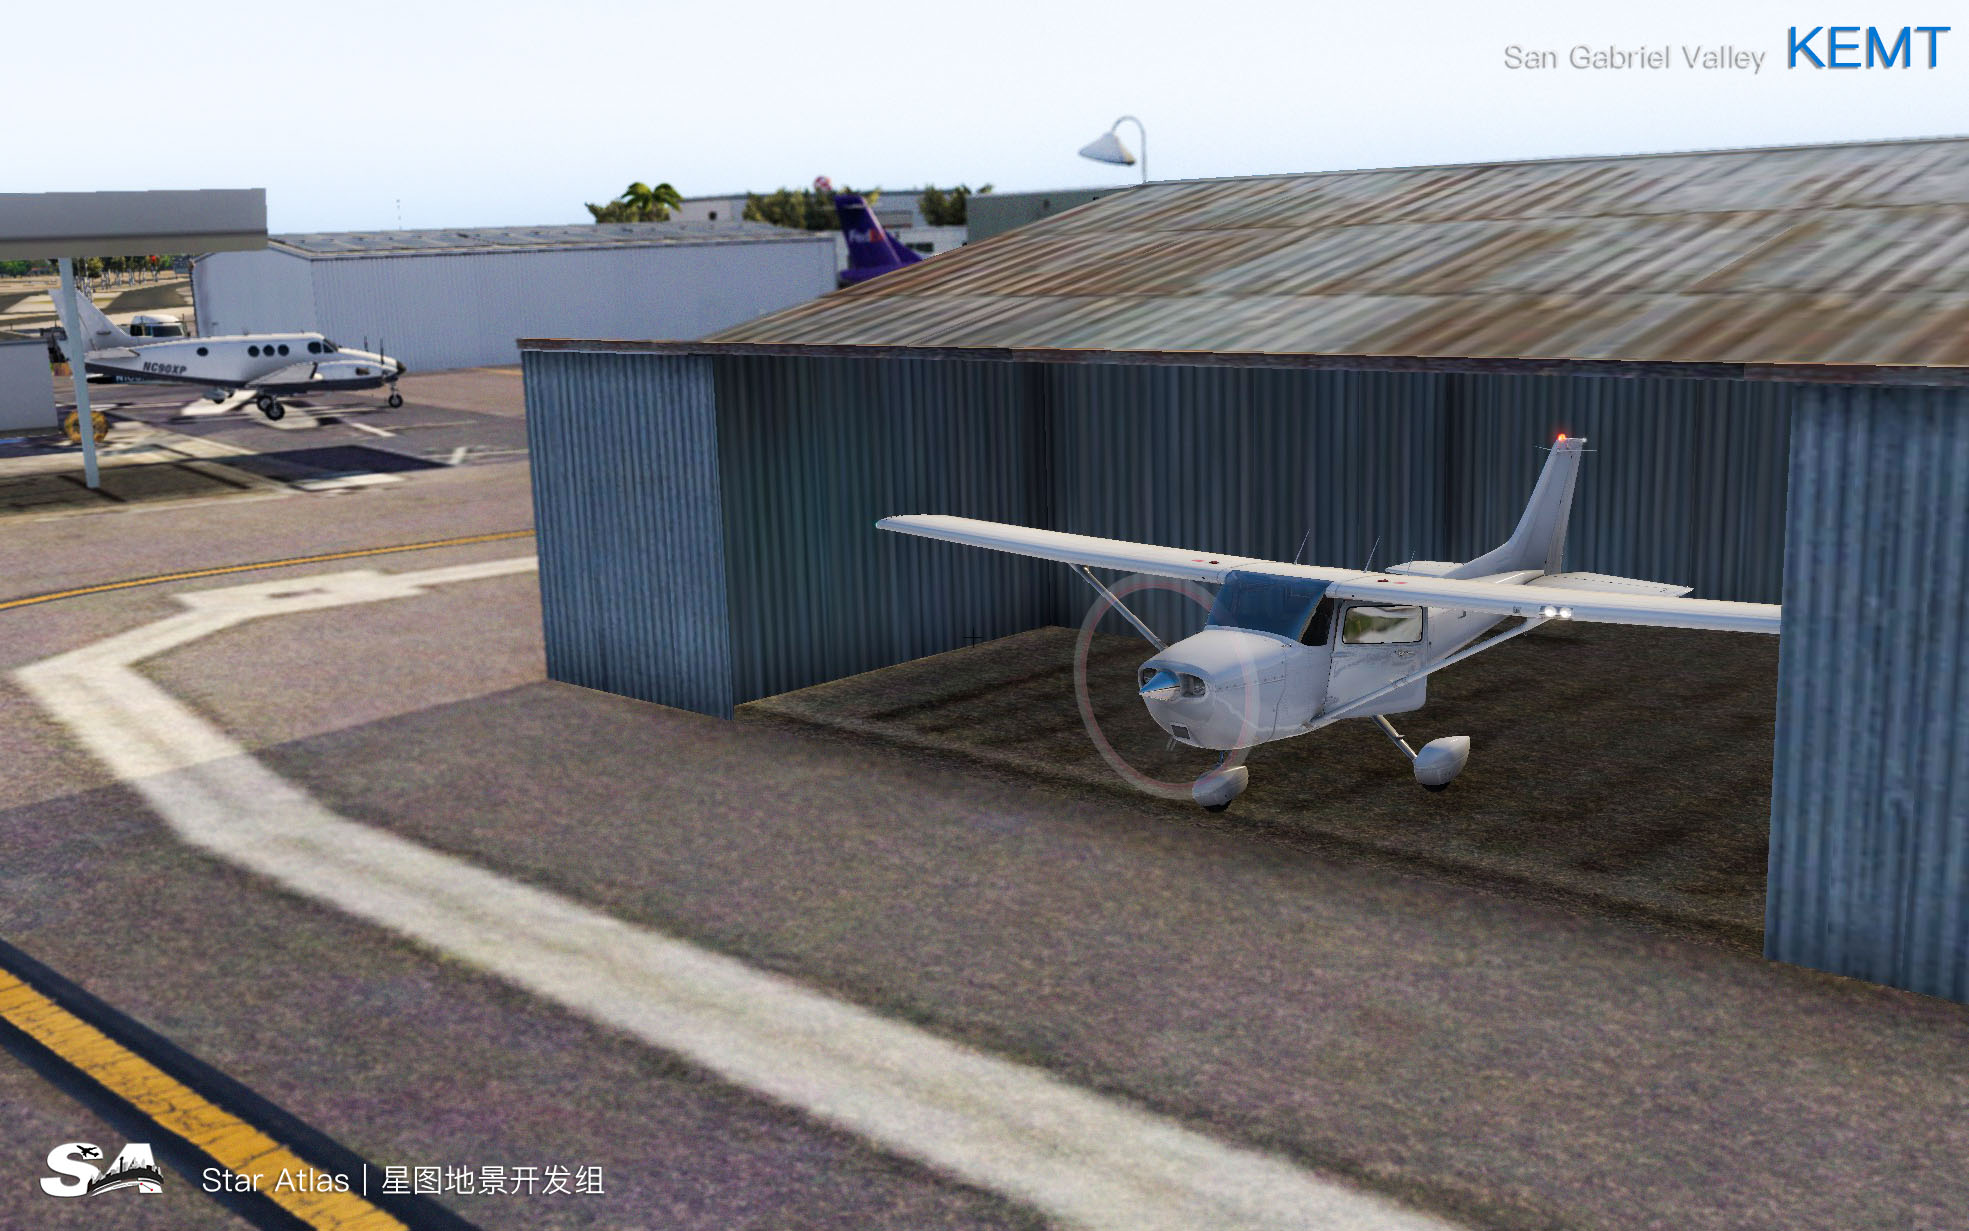 【X-Plane】KEMT-圣盖博谷机场 HD 1.0-9540 